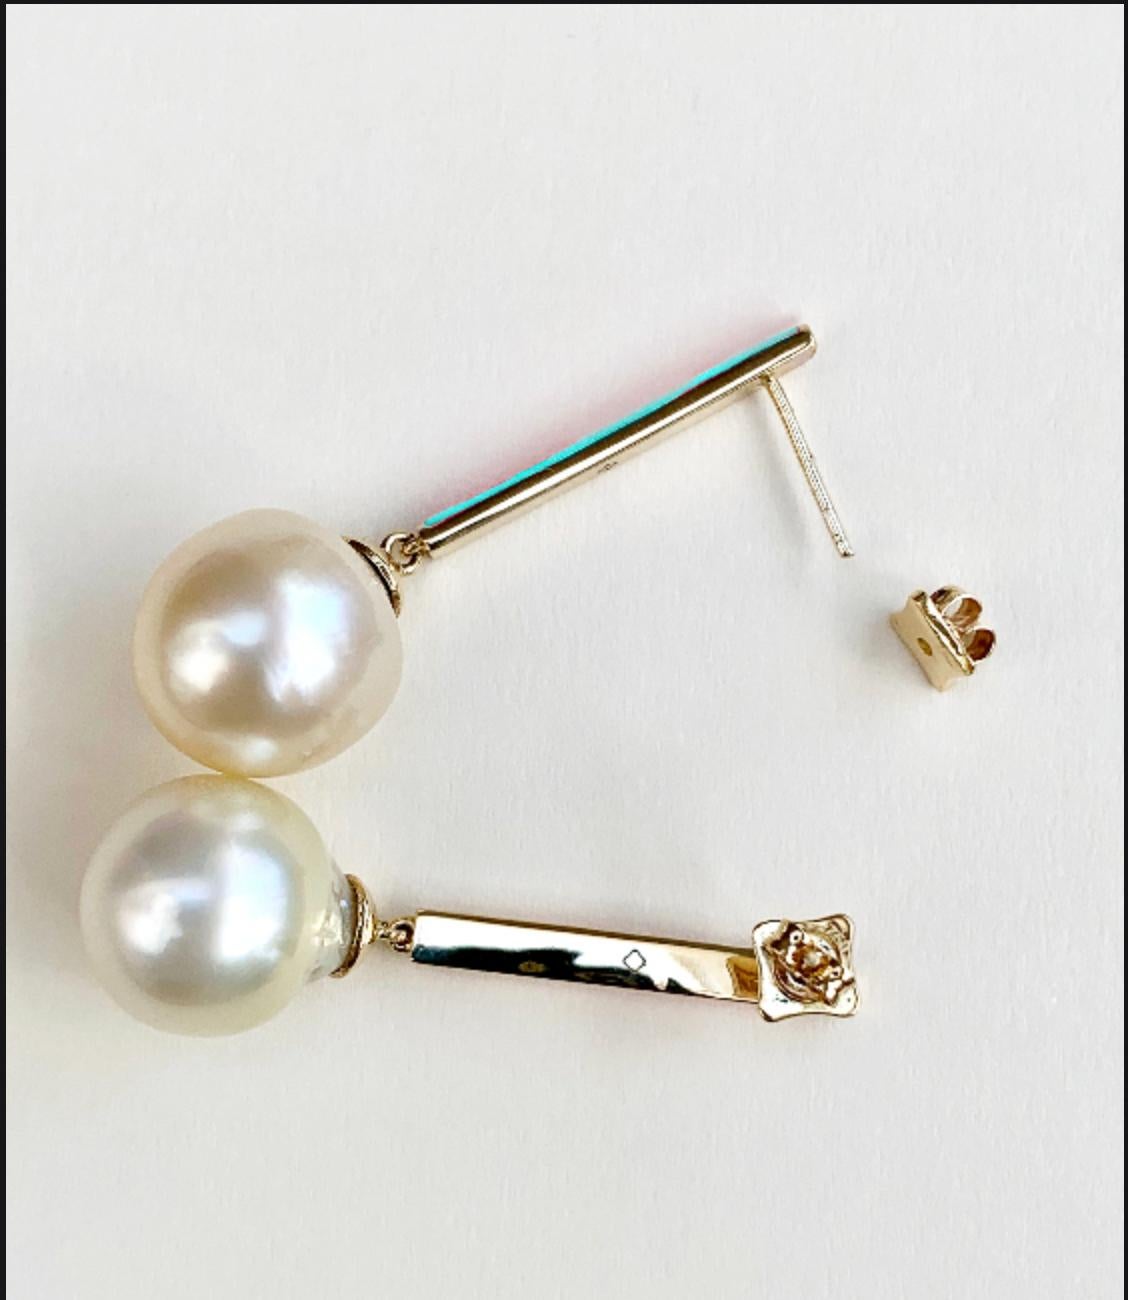 Uncut Maviada's Turquoise Enamel South Sea Pearl Earrings, Set in 18K Gold For Sale